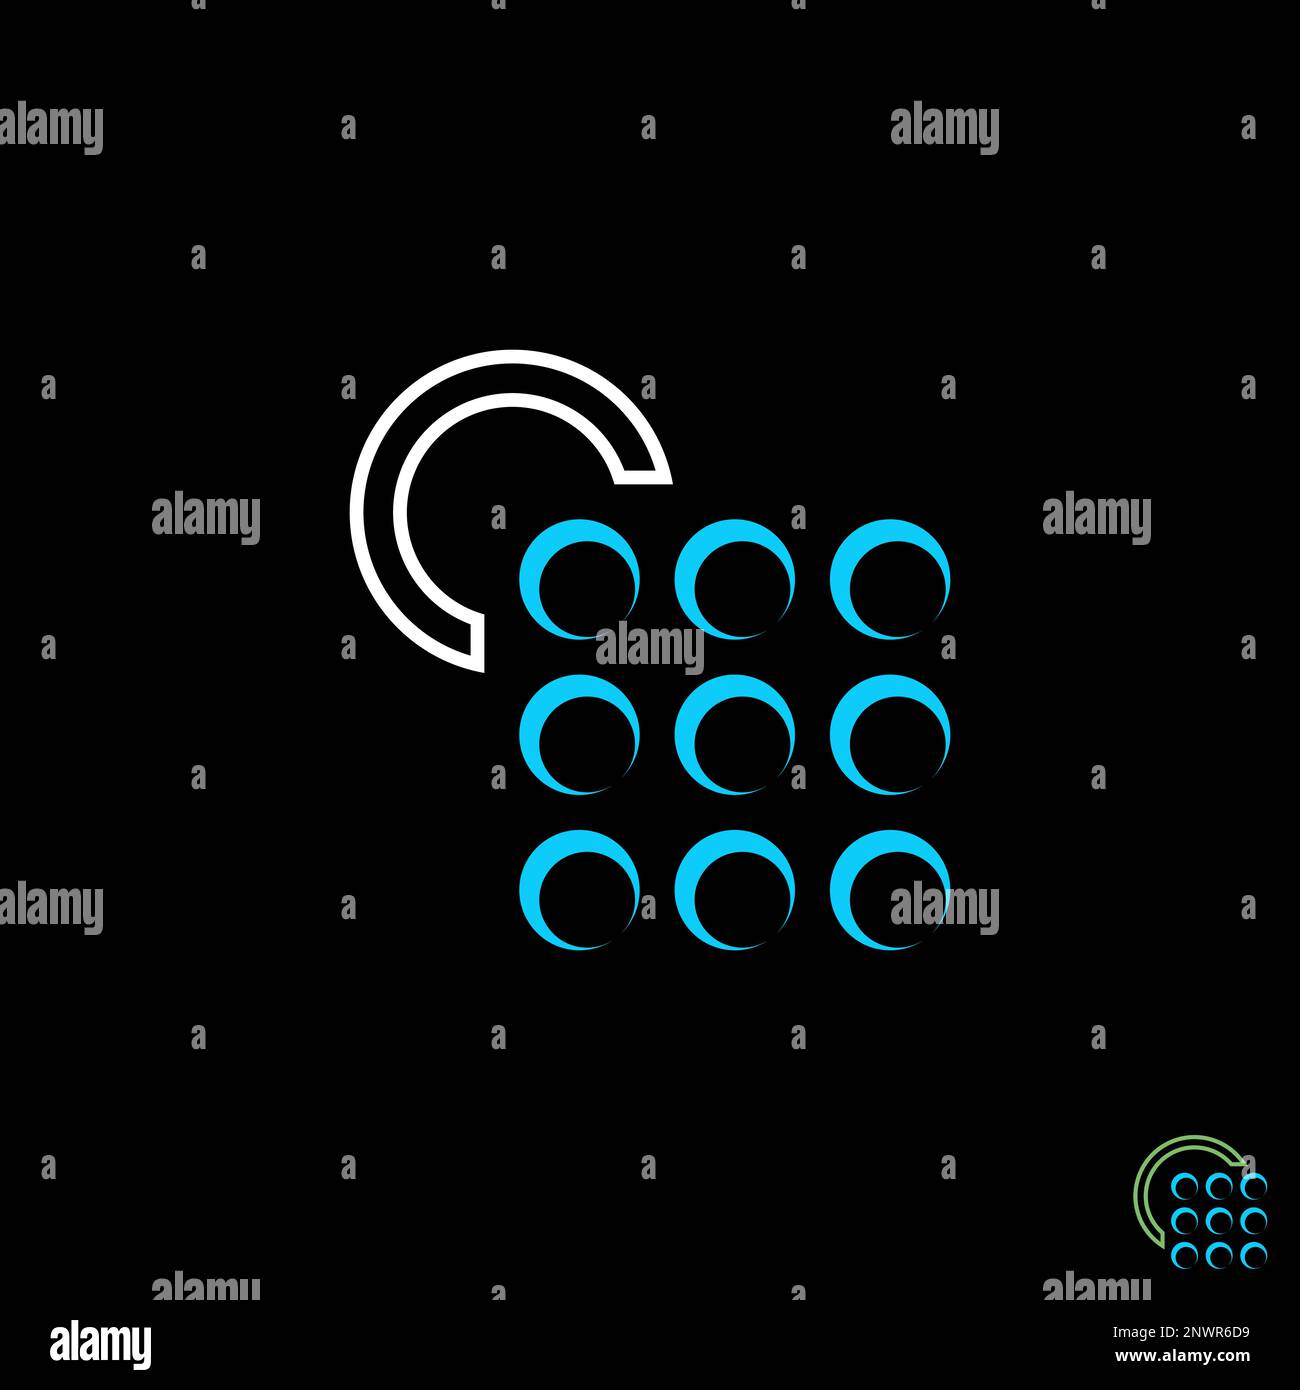 Neun rechteckige Kreise sind mit Pfeil und Buchstabe C an der Ecke markiert Grafiksymbol Logo-Design abstraktes Konzept Vektortechnologie oder Internet Stock Vektor